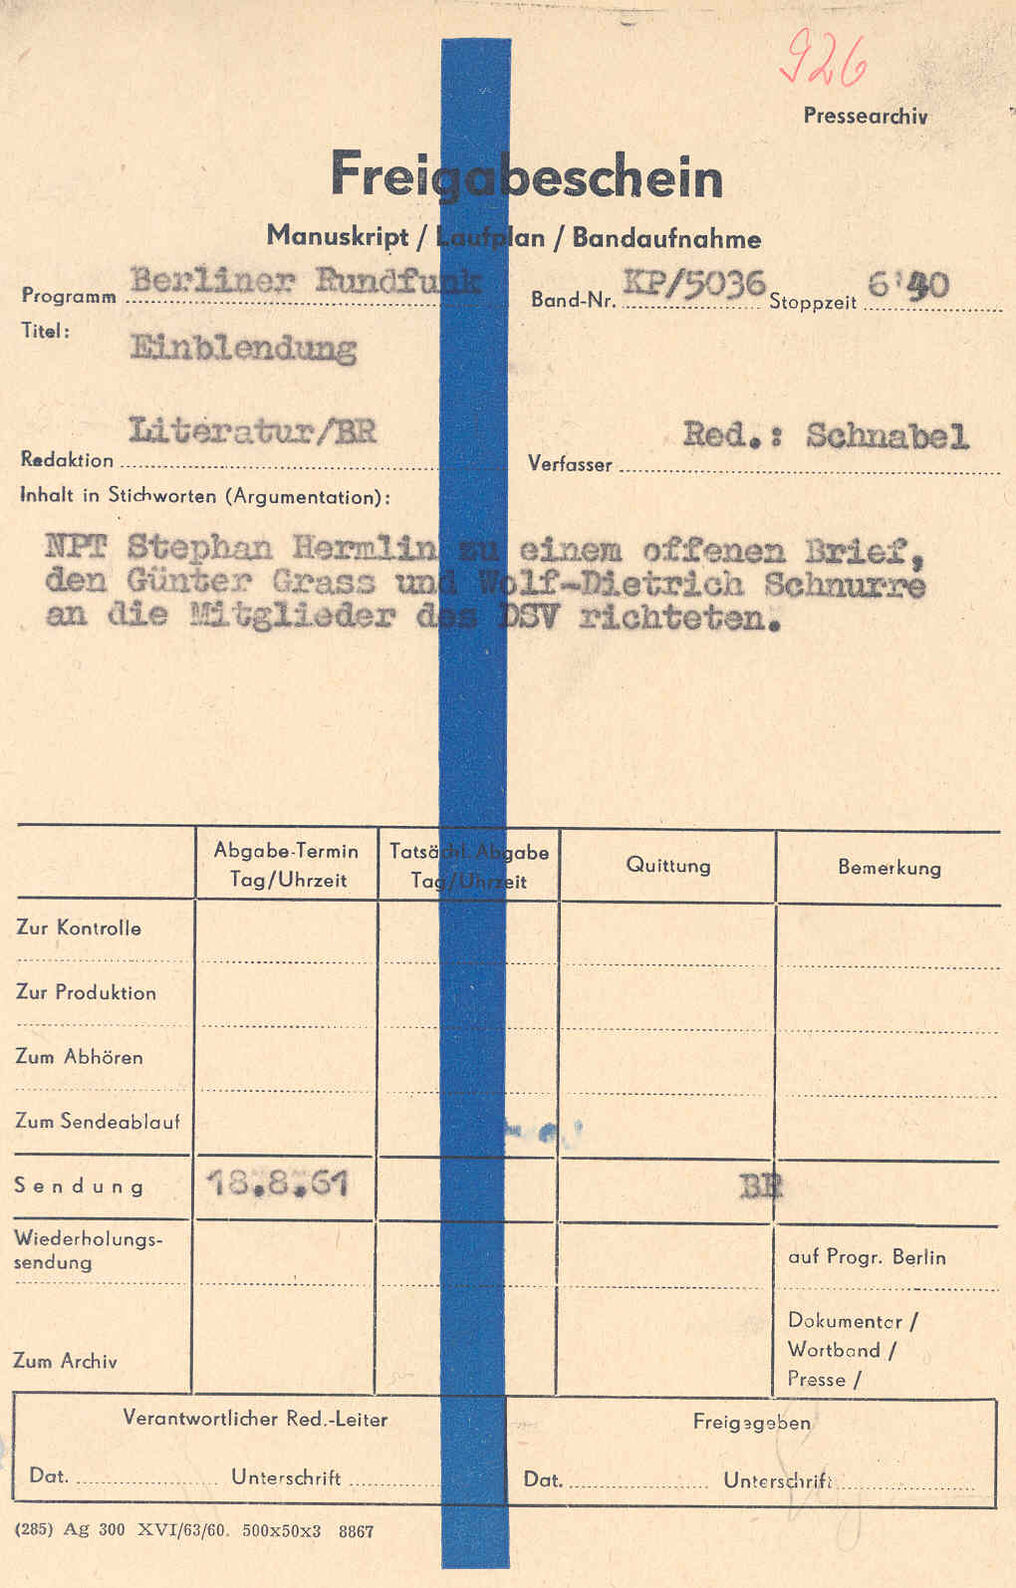 Freigabeschein für Einblendung mit Stellungnahme von Stephan Hermlin.